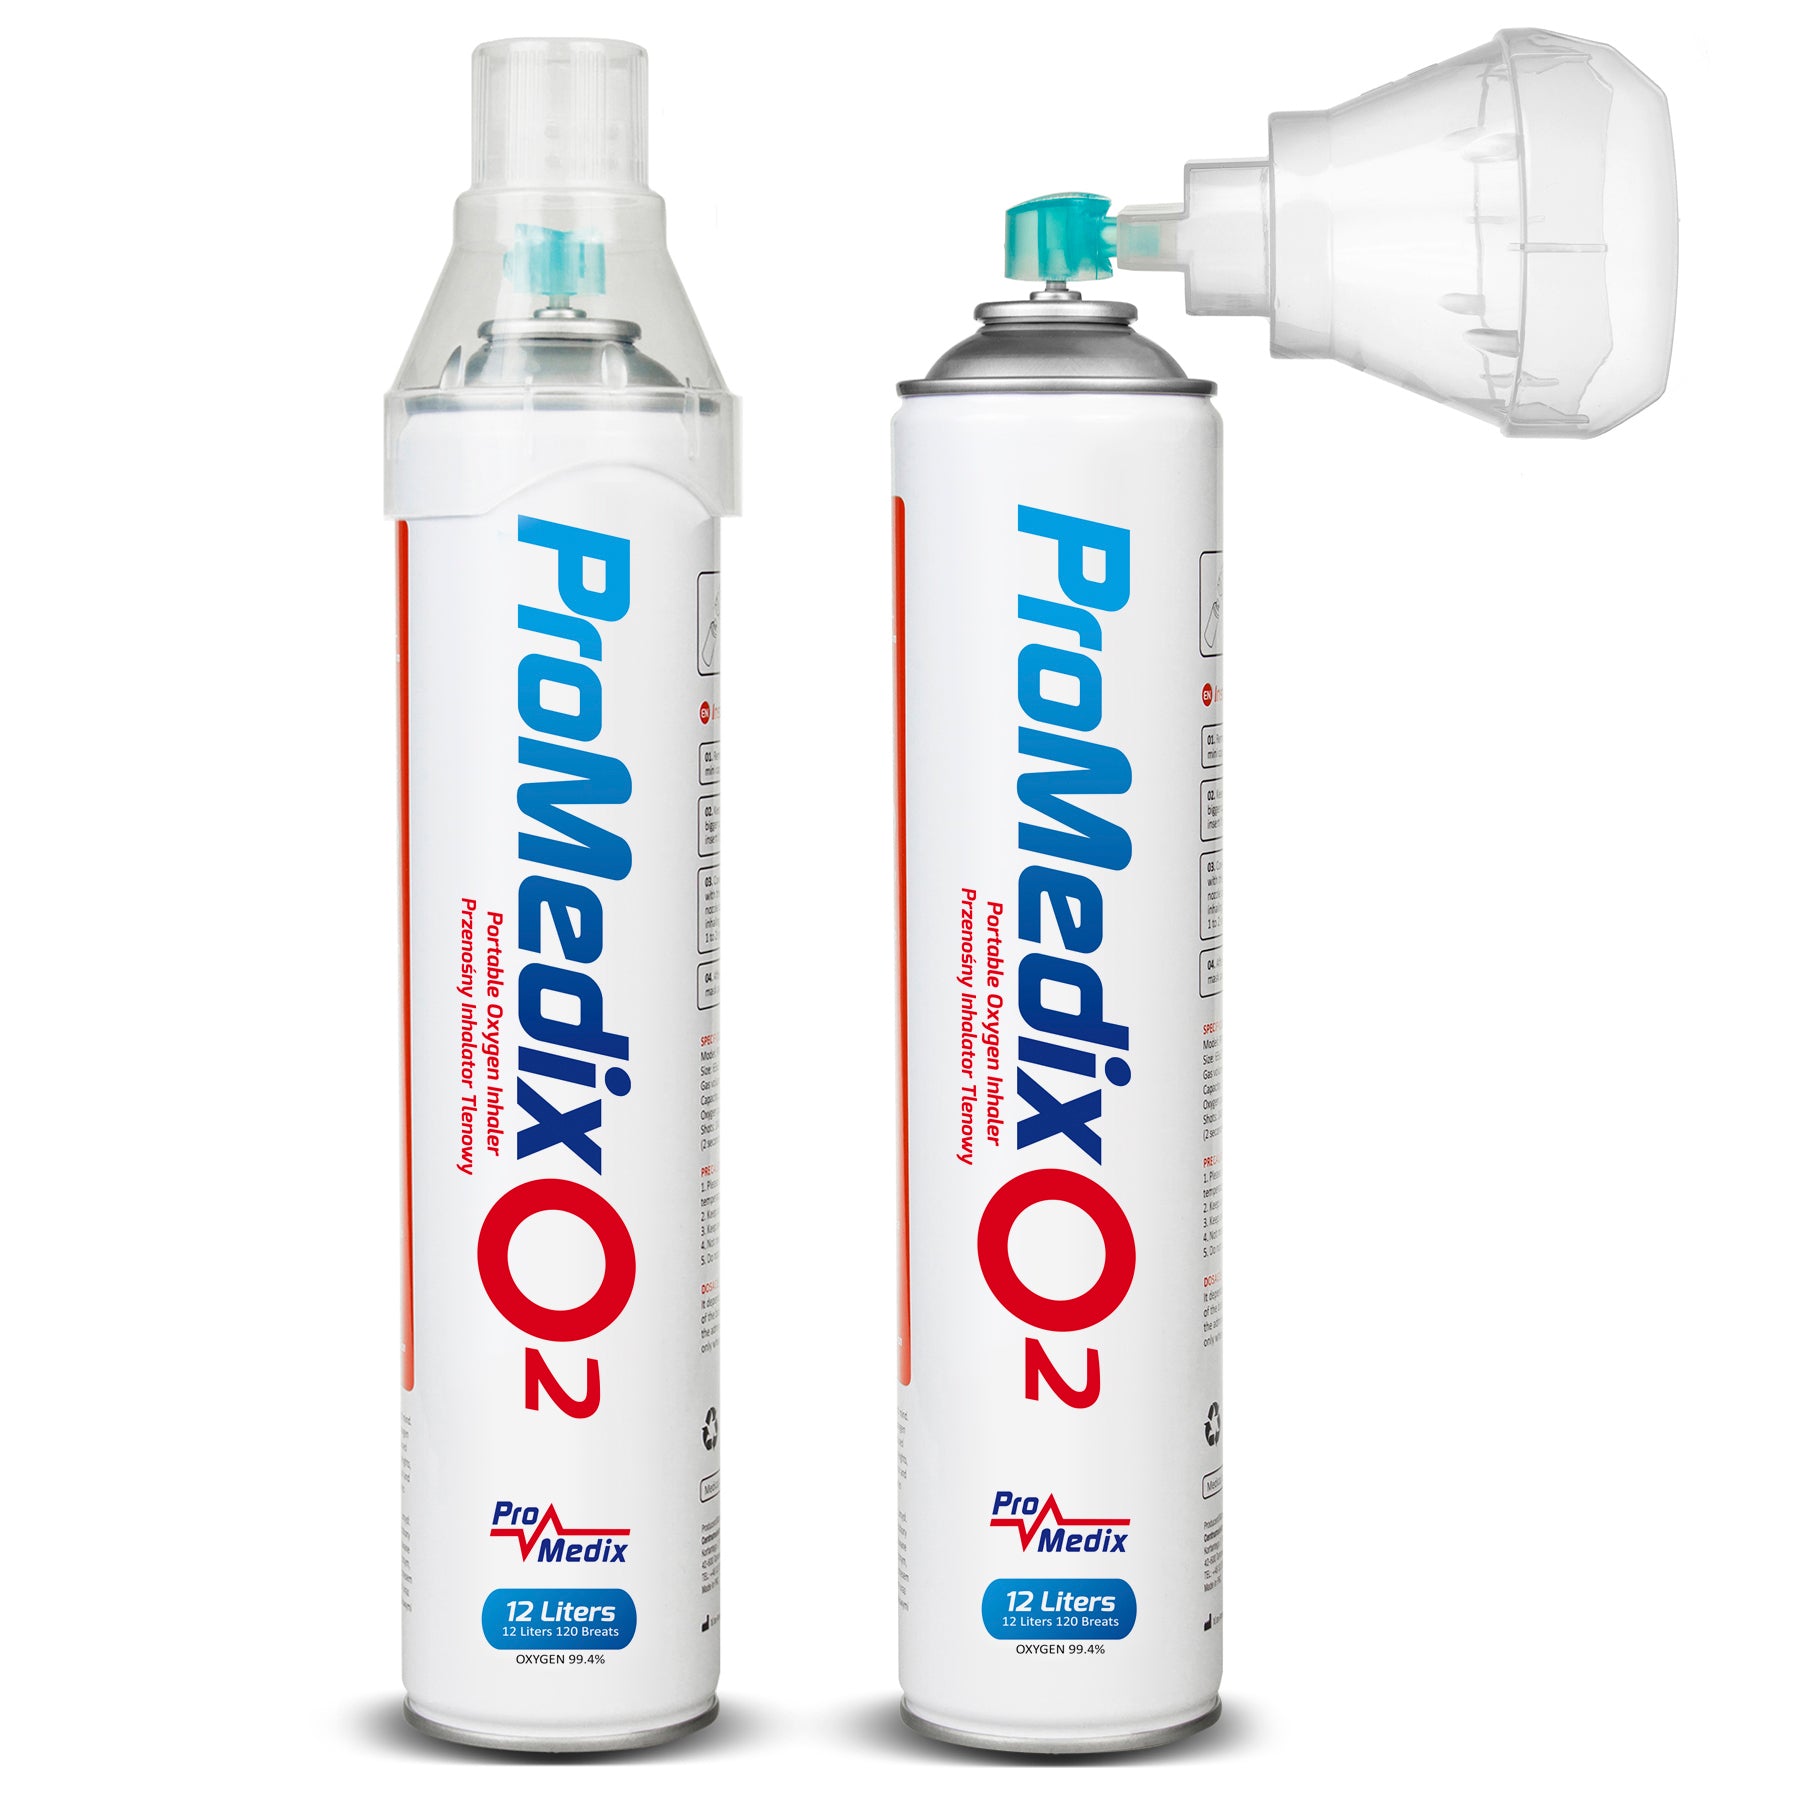 Oxigeno para inhalación Opur 8 litros — Farmacia Castellanos